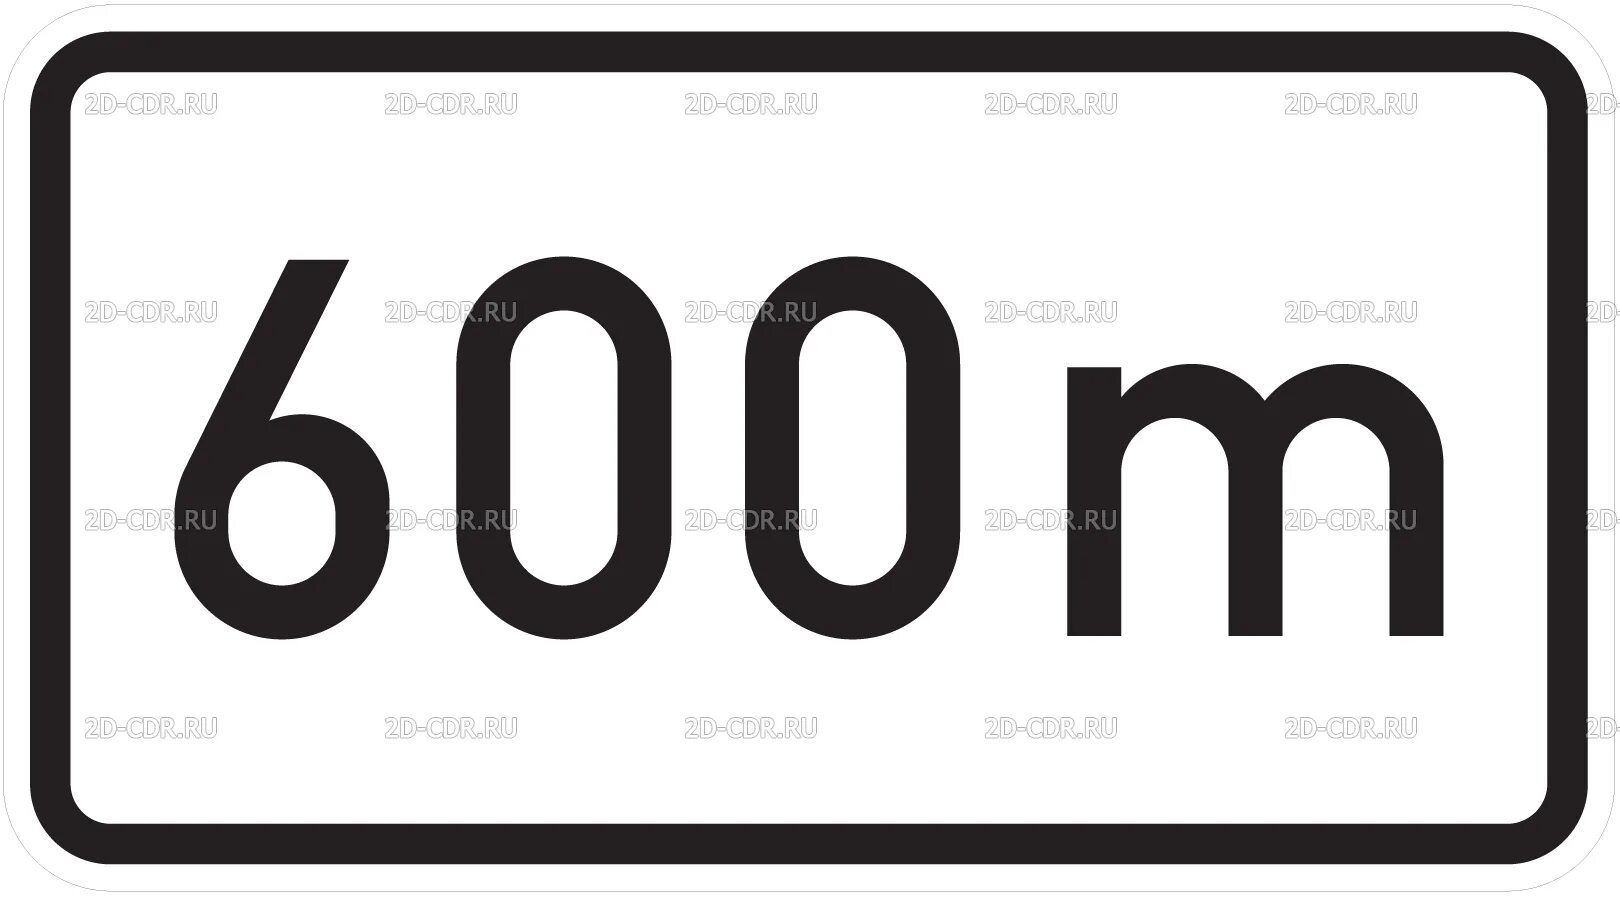 600 1.3. 8.1.1 Дорожный знак. Знак 600 м. 8.2.1 600м дорожный знак. Знак 8.2.1 200.